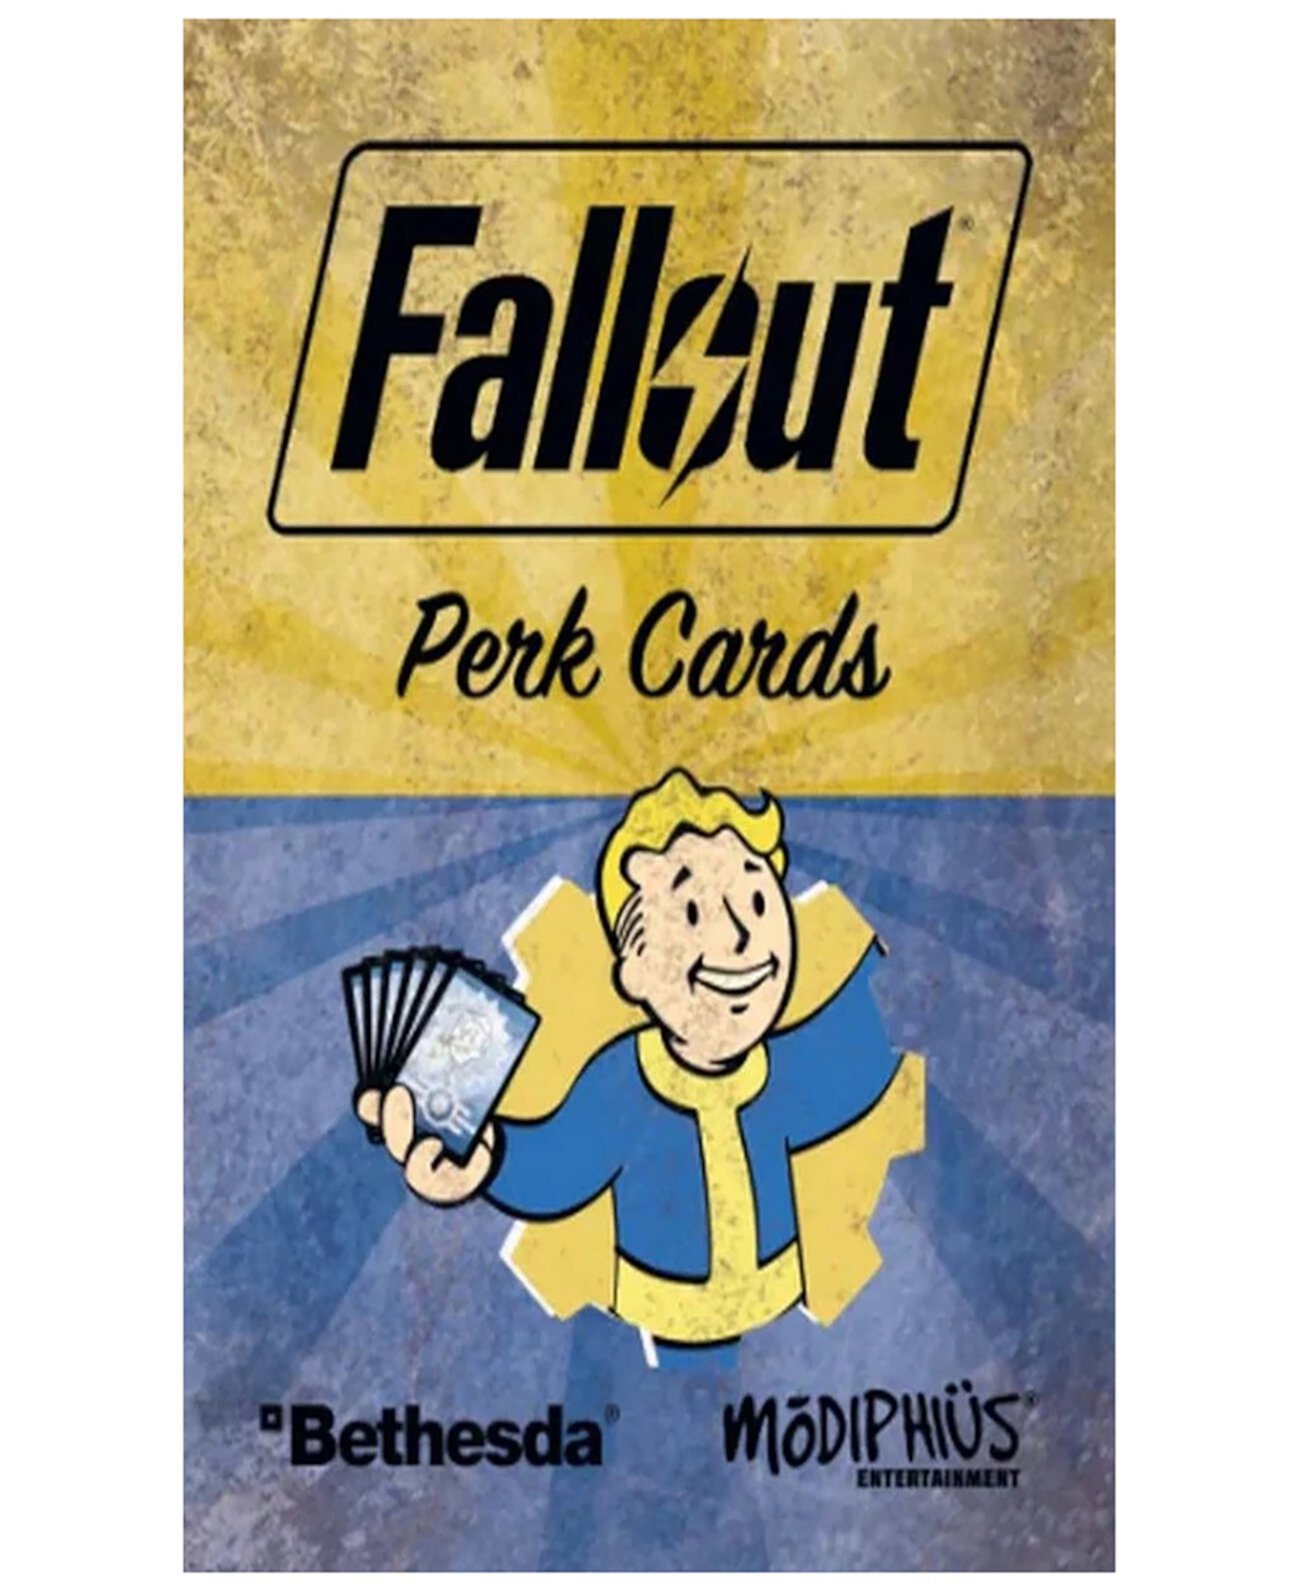 Аксессуар карт перков Madiphius Fallout для ролевой игры Modiphius